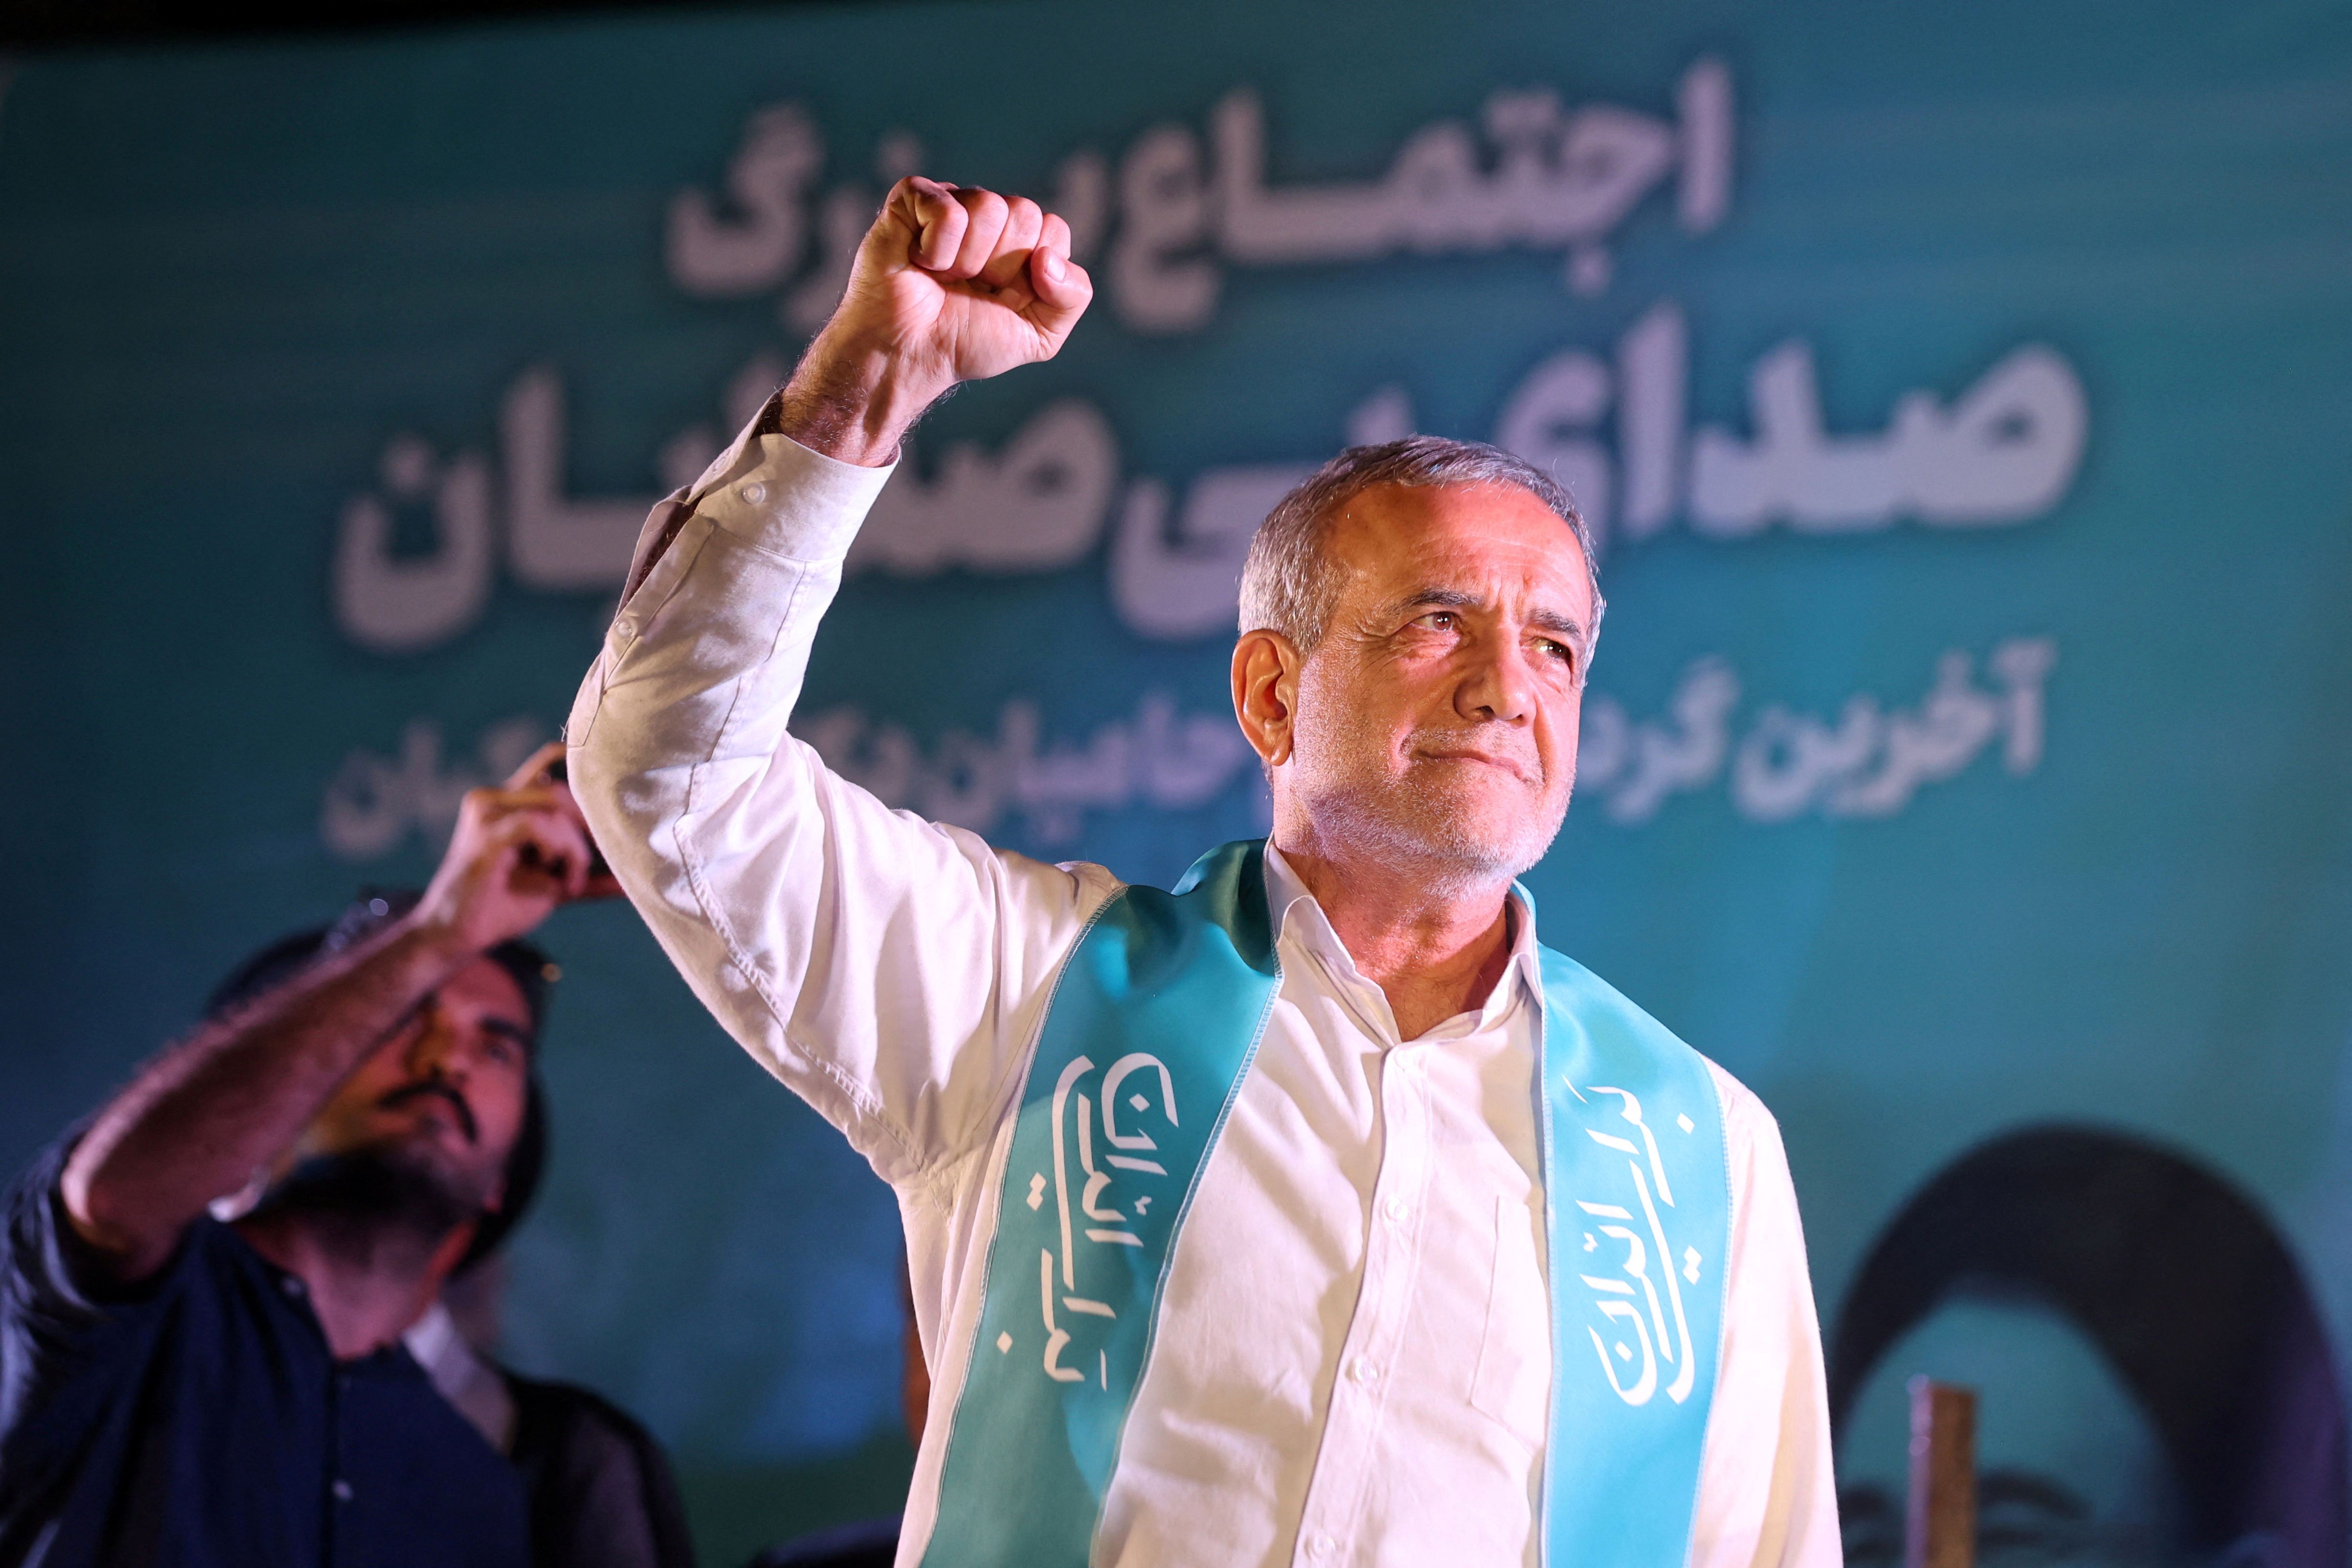 نزدیکان مسعود پزشکیان پس از پیروزی در انتخابات ریاست جمهوری + عکس